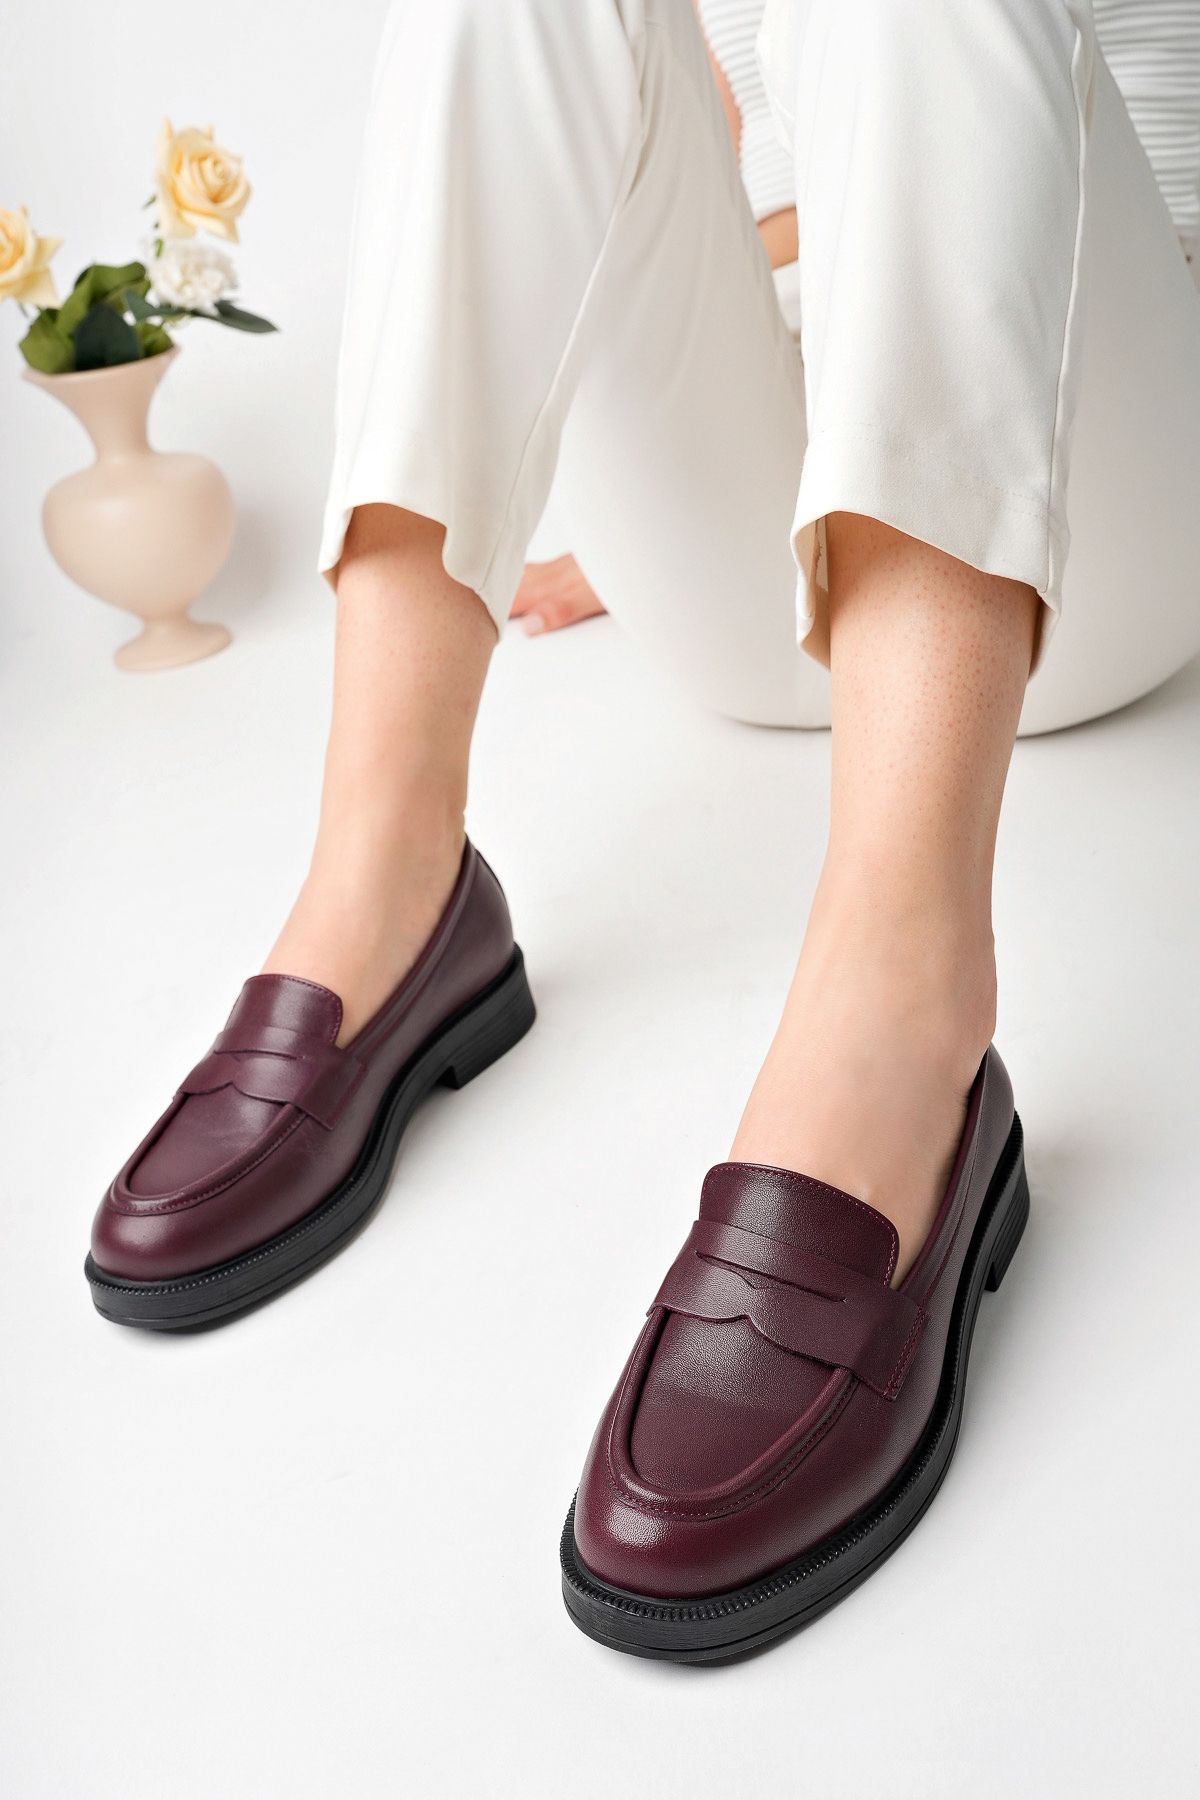 Chios Hakiki Deri Kadın Ayakkabısı Loafer